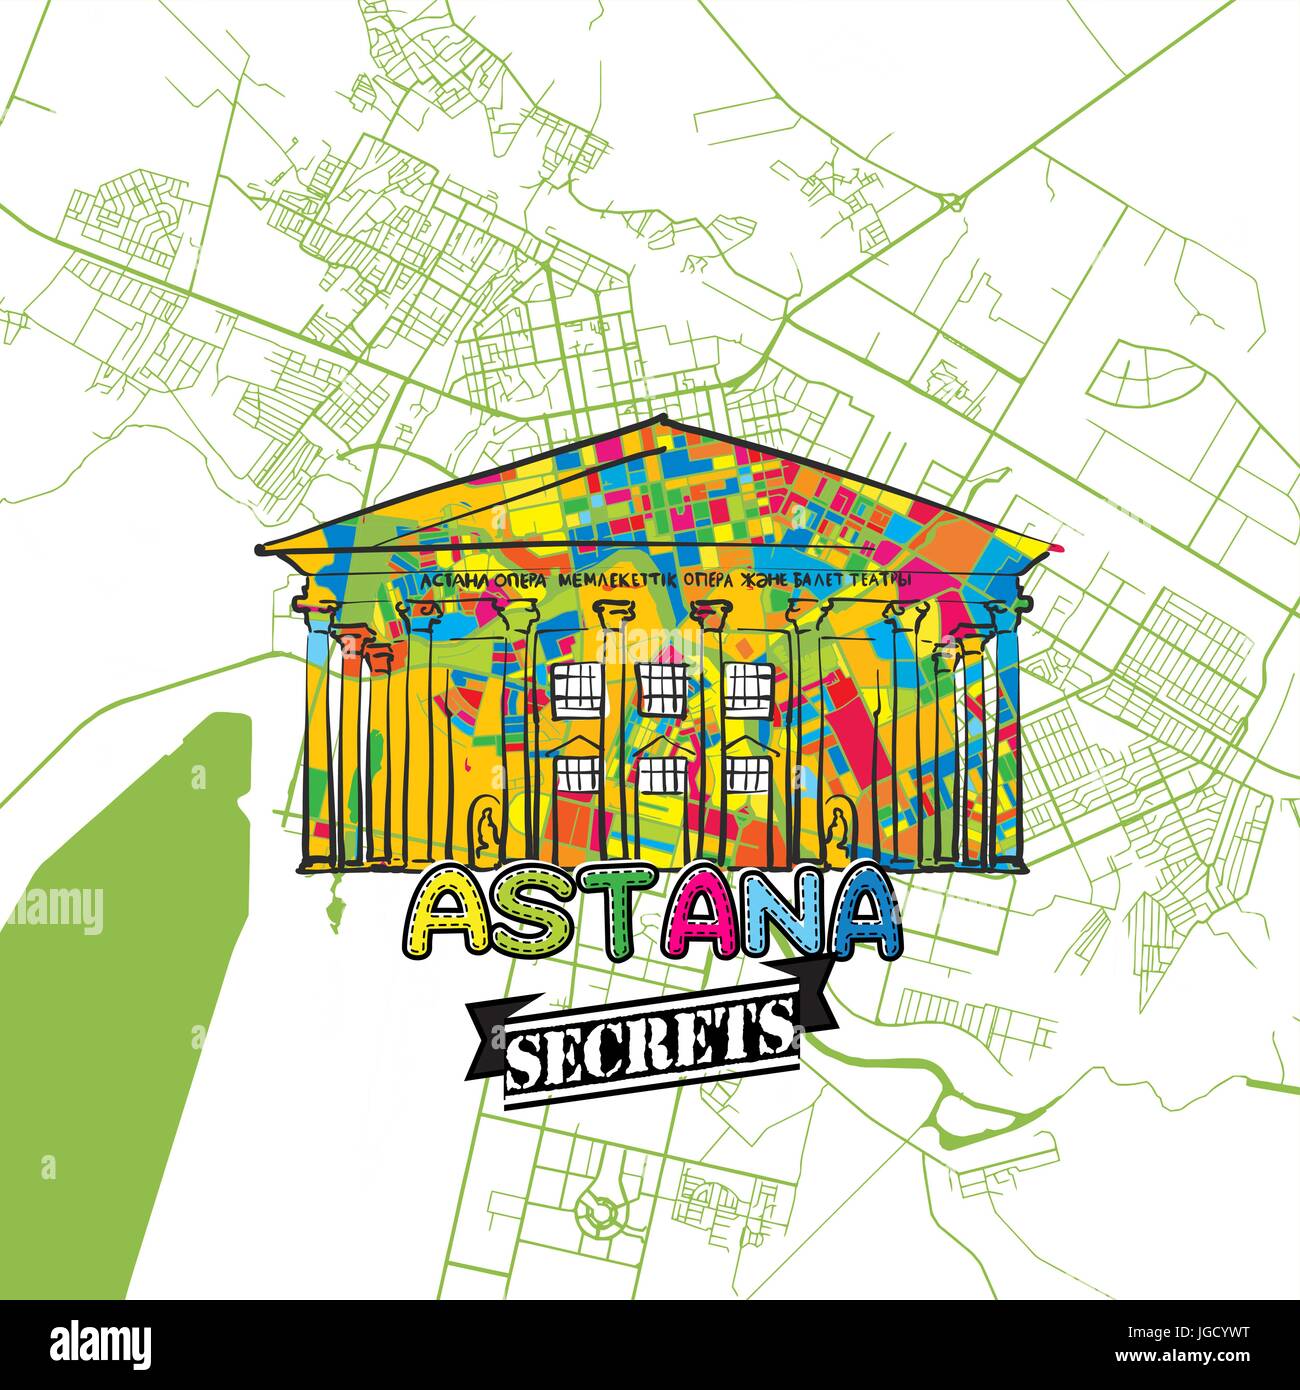 Billet d'Astana de l'Art Secrets Site pour la cartographie des experts et des guides de voyage. Le logo de la ville à la main, typo de badge et dessinés à la main sur le dessus de l'image vectorielle sont regroupés et Illustration de Vecteur